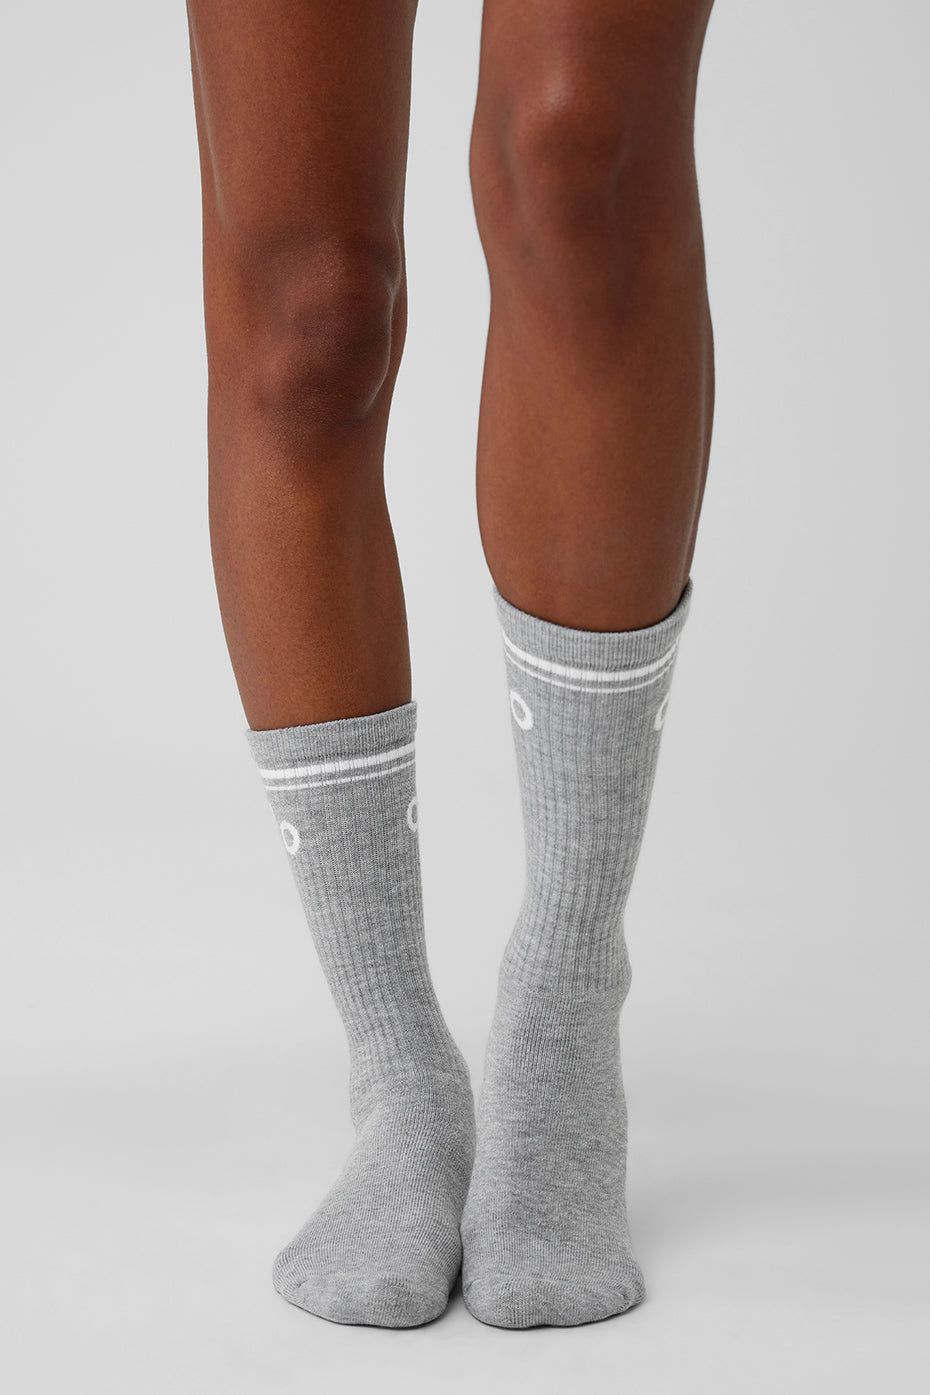 Unisex Throwback Sock - Athletic Heather Grey/White